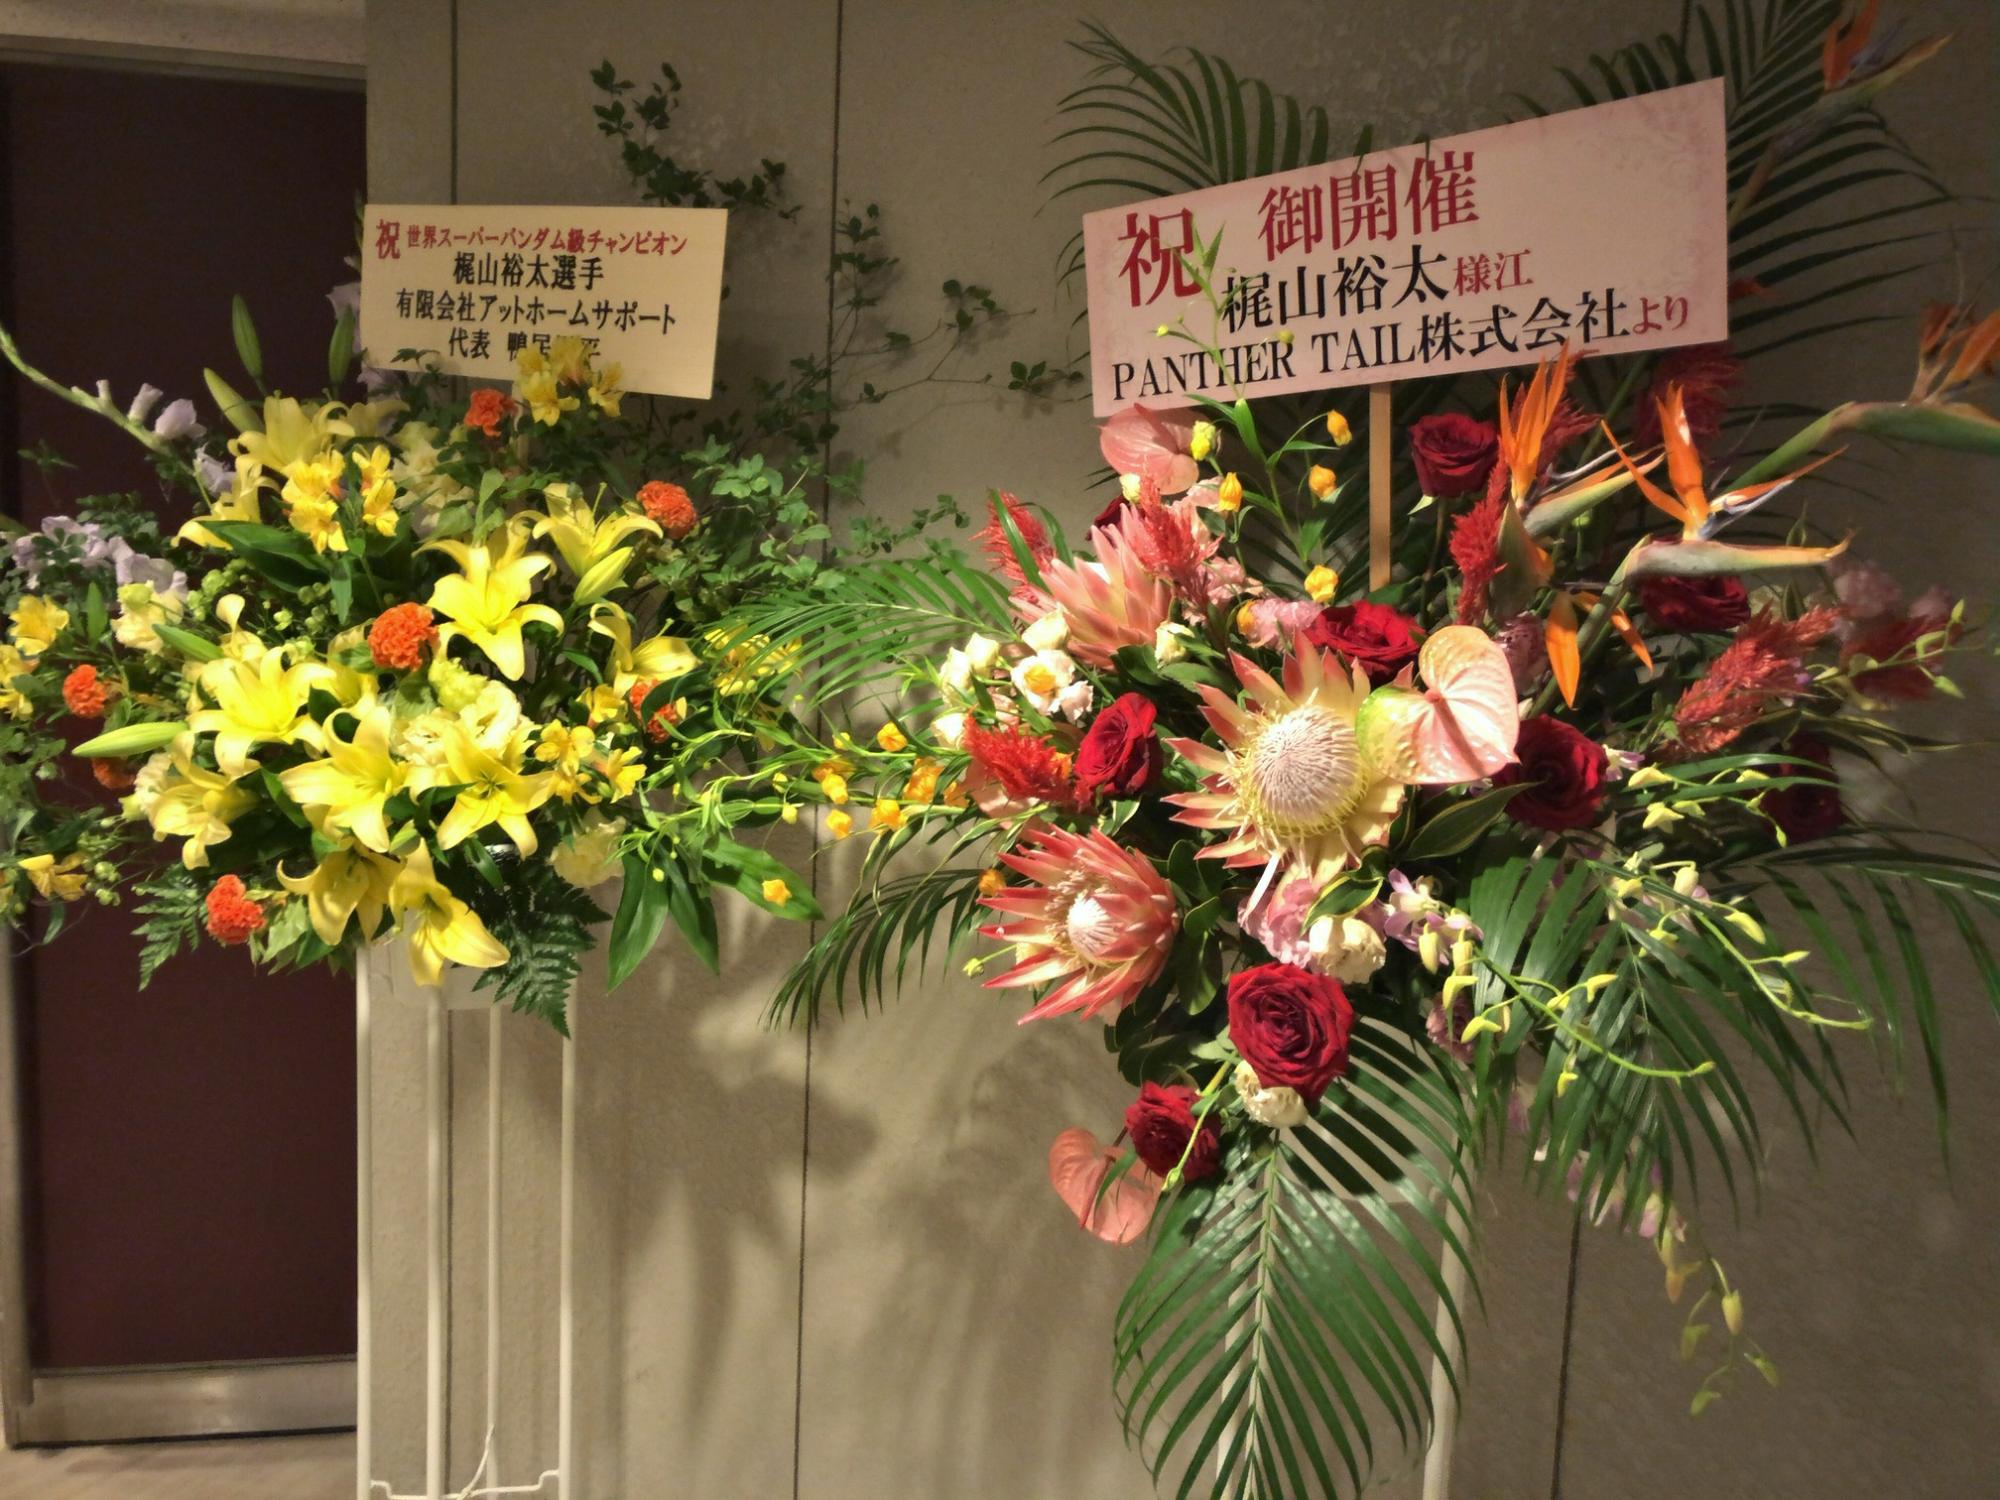 左に黄色とオレンジ色の花で生けられたスタンド花、右は赤色やピンク色の花でいけられたスタンド花をアップで撮影した写真